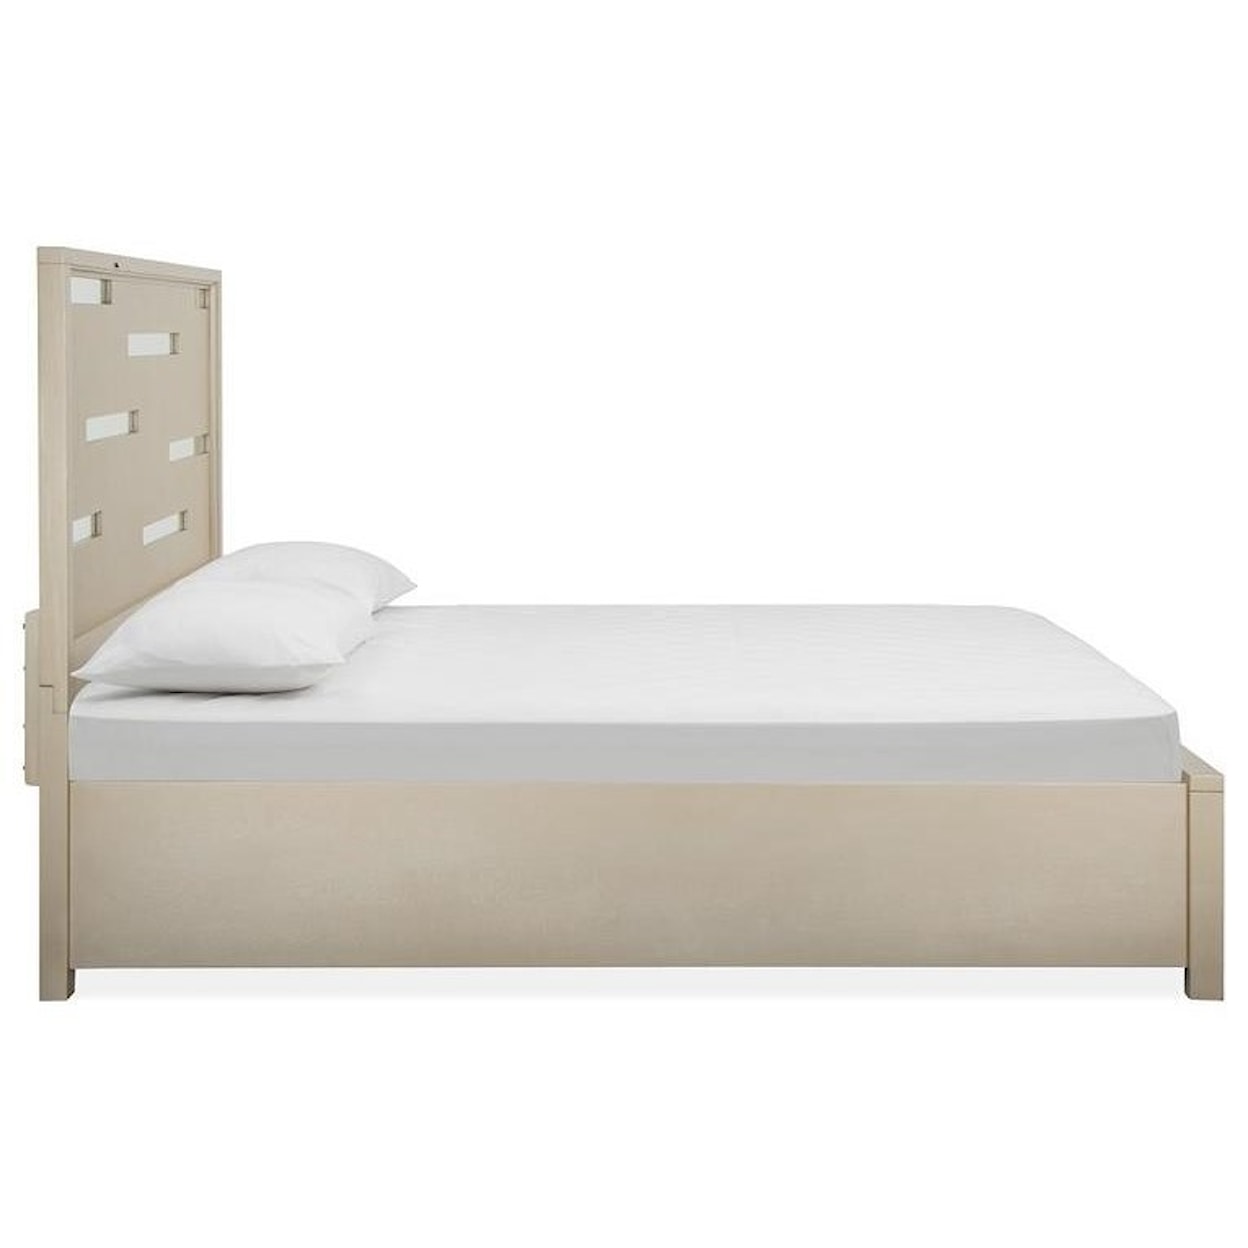 Magnussen Home Chantelle Bedroom Queen Panel Bed with Storage